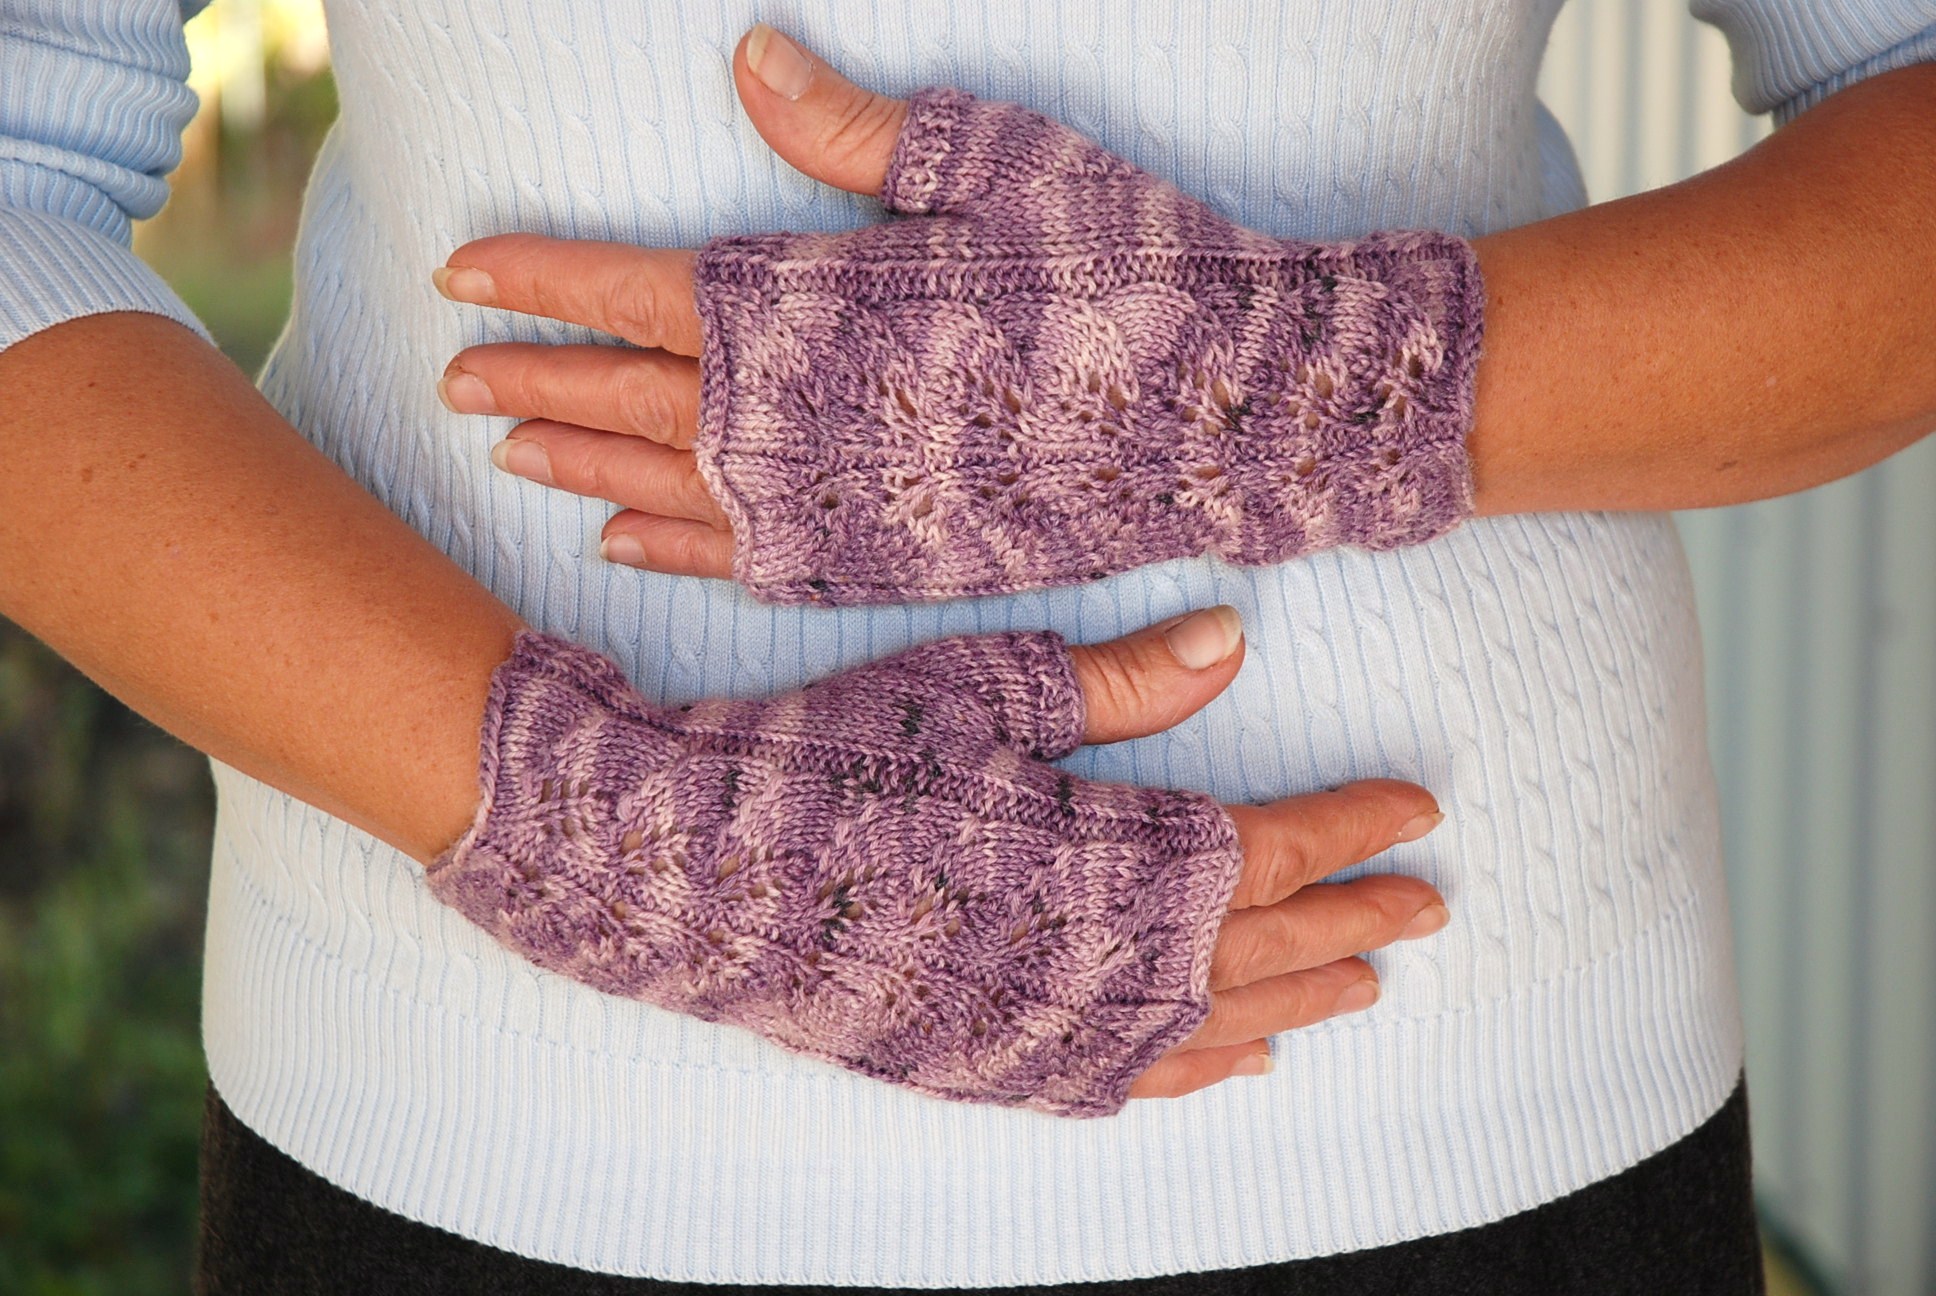 fingerless gloves knitting pattern two needles